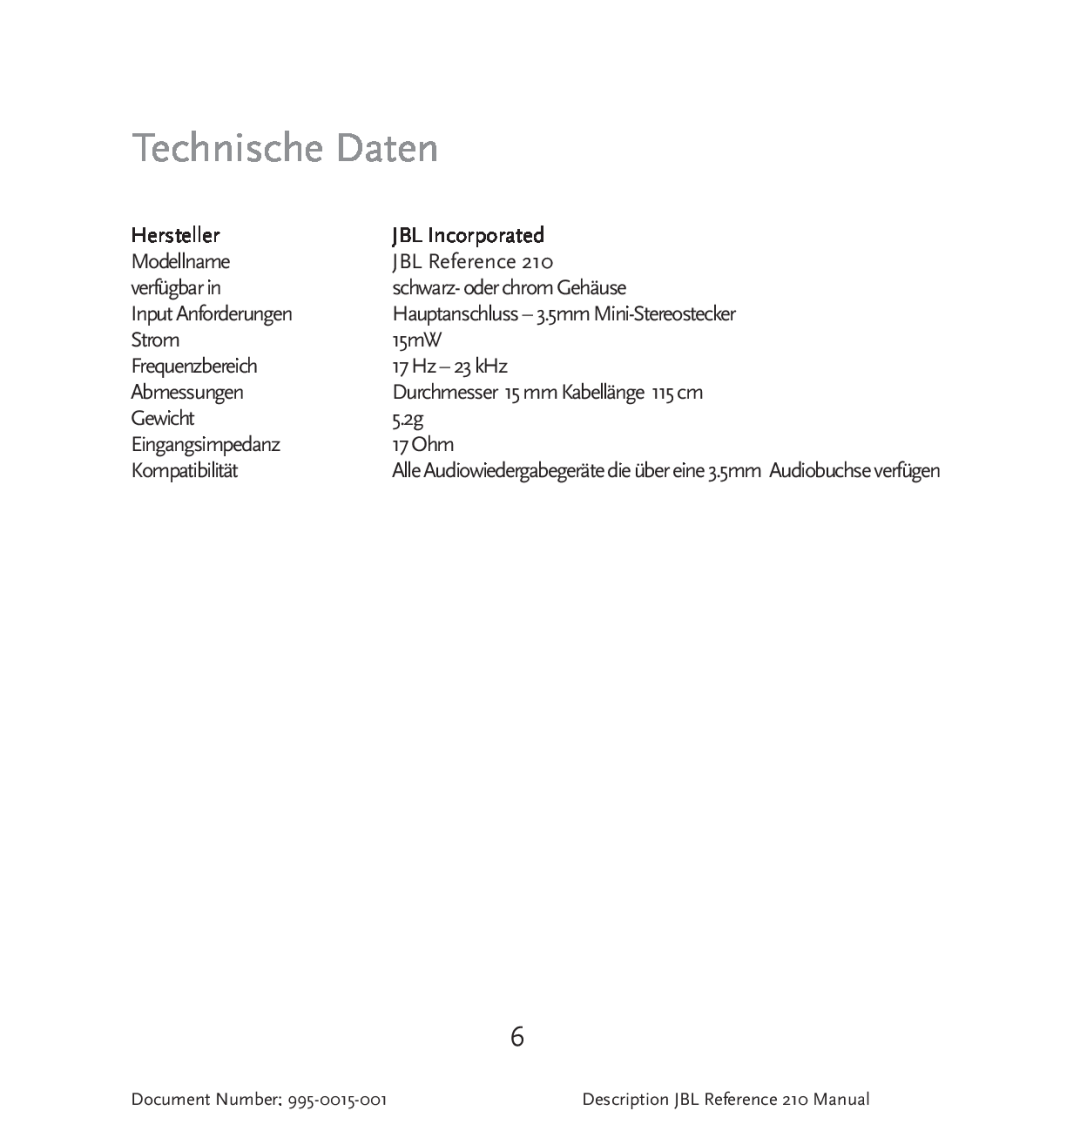 JBL 210 manual Technische Daten 